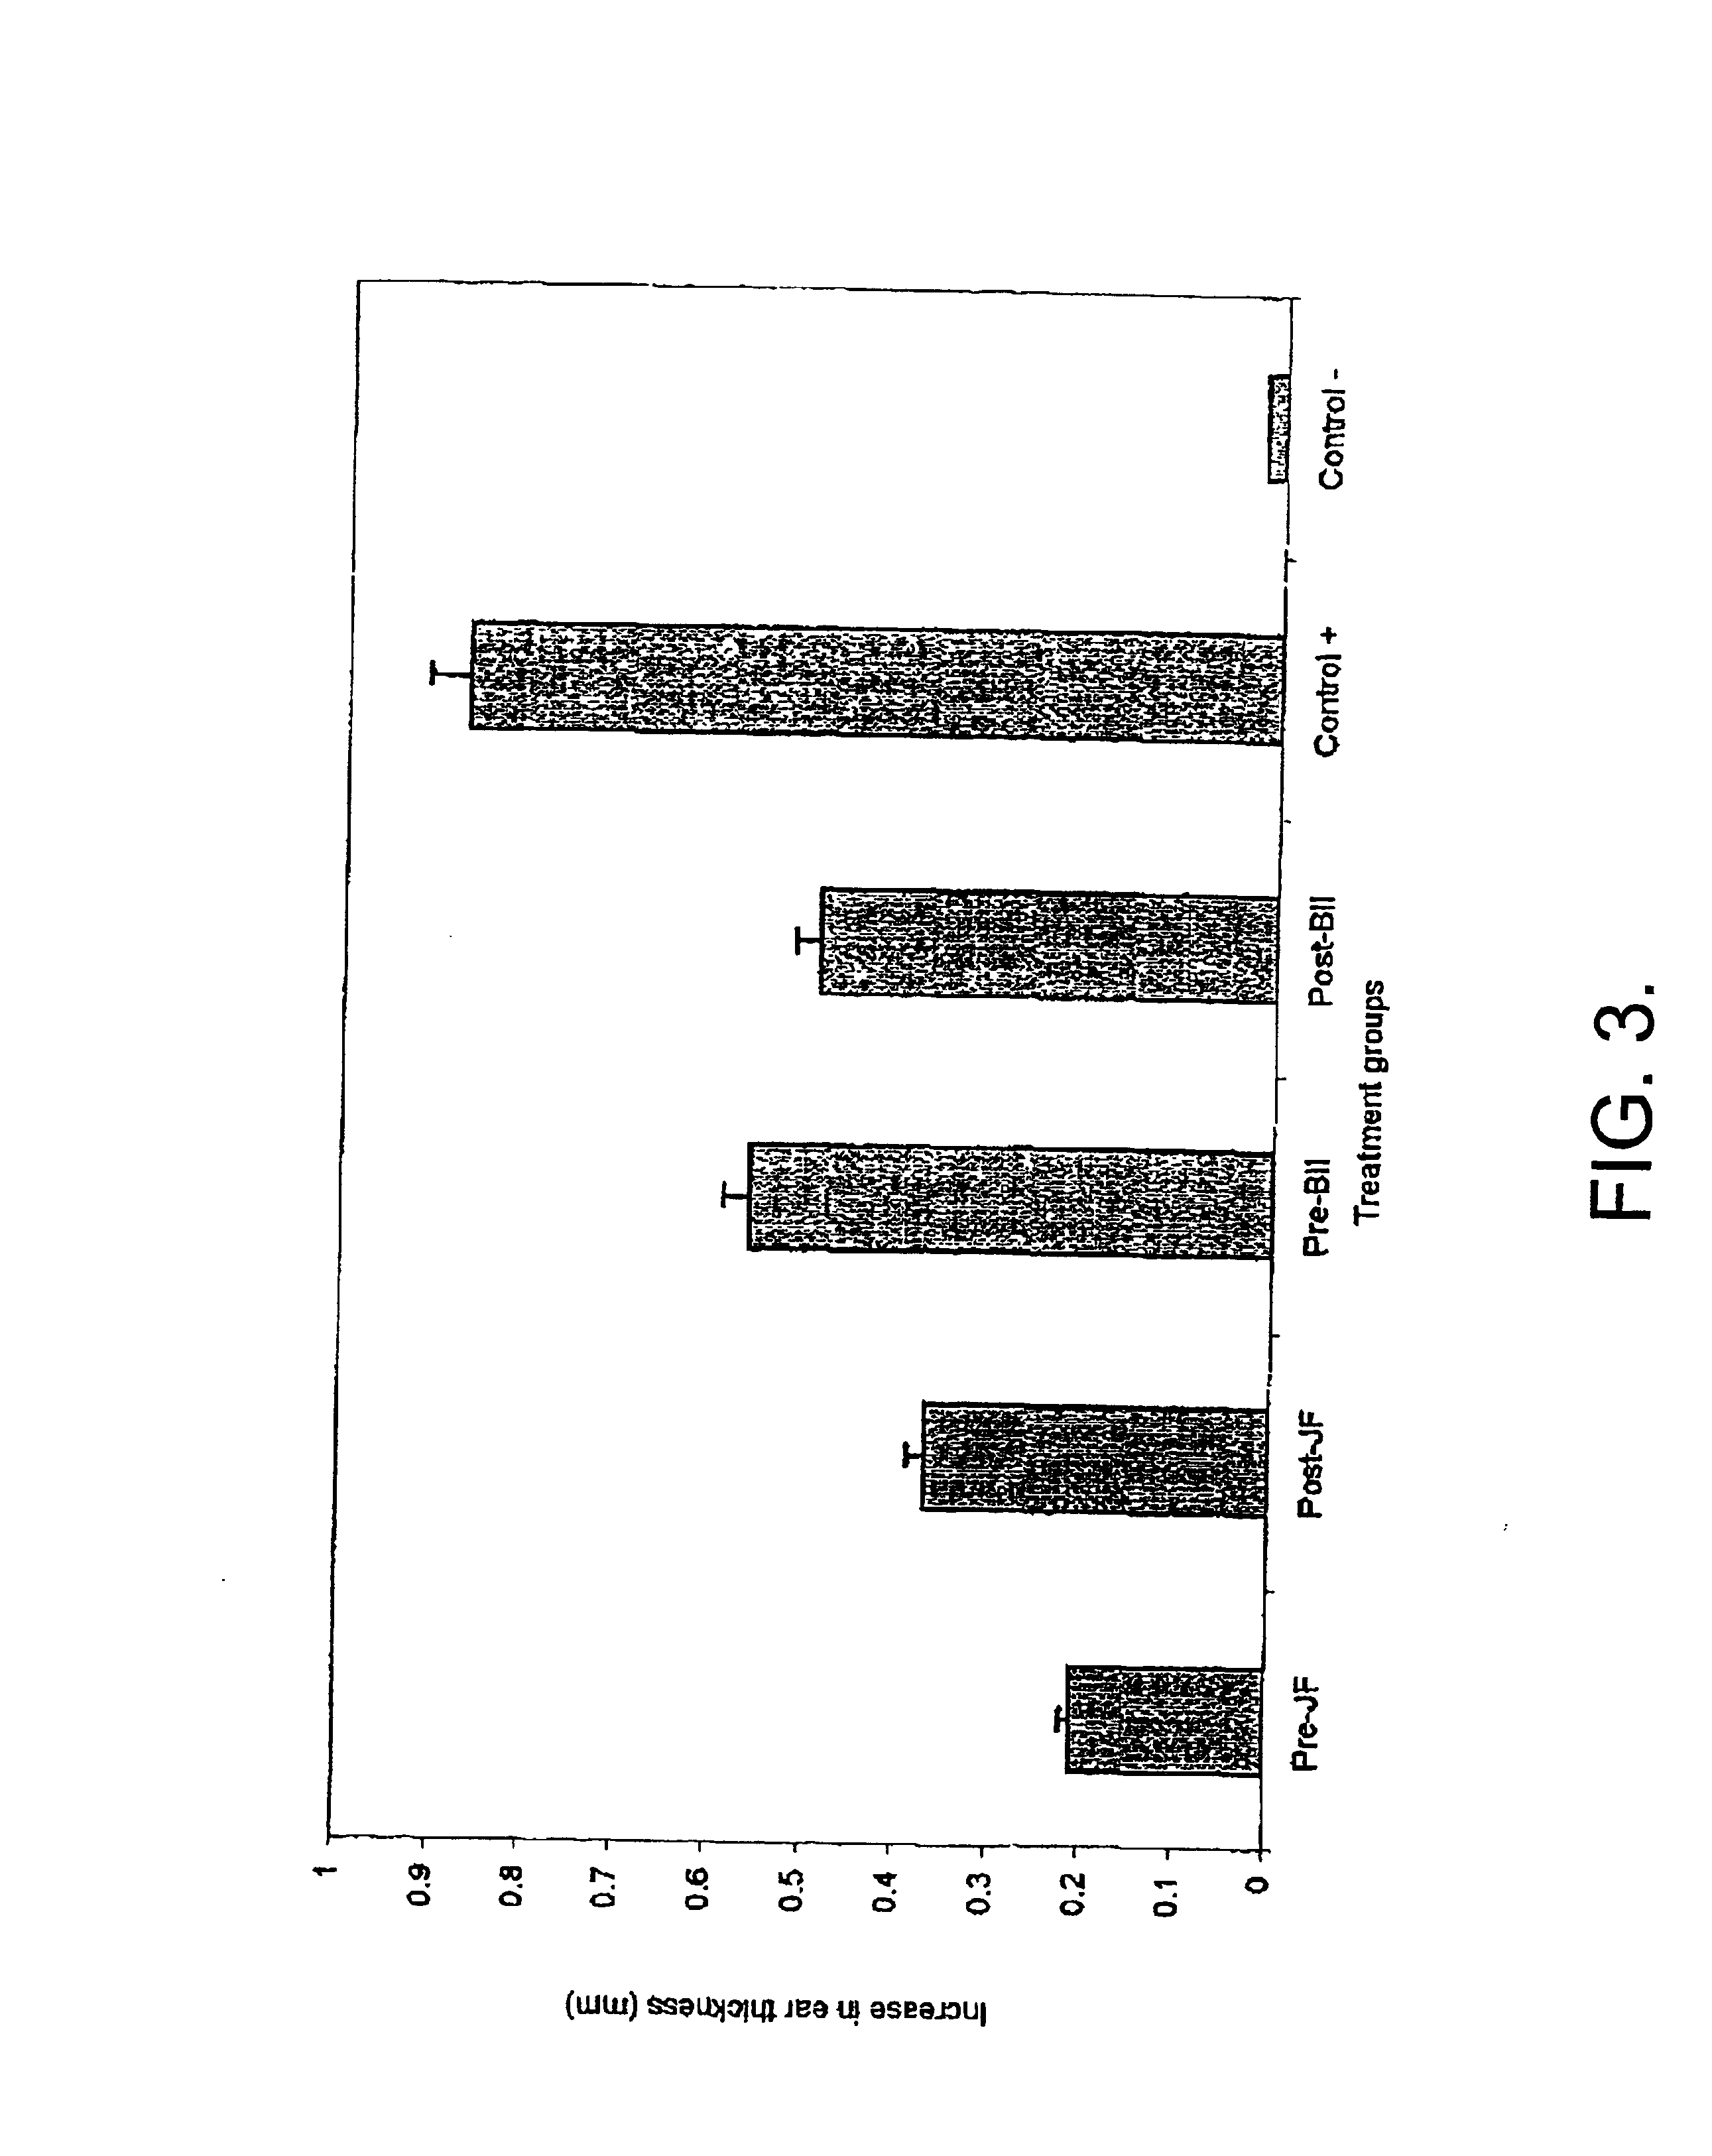 Use of jellyfish collagen (type II) in the treatment of rheumatoid arthritis